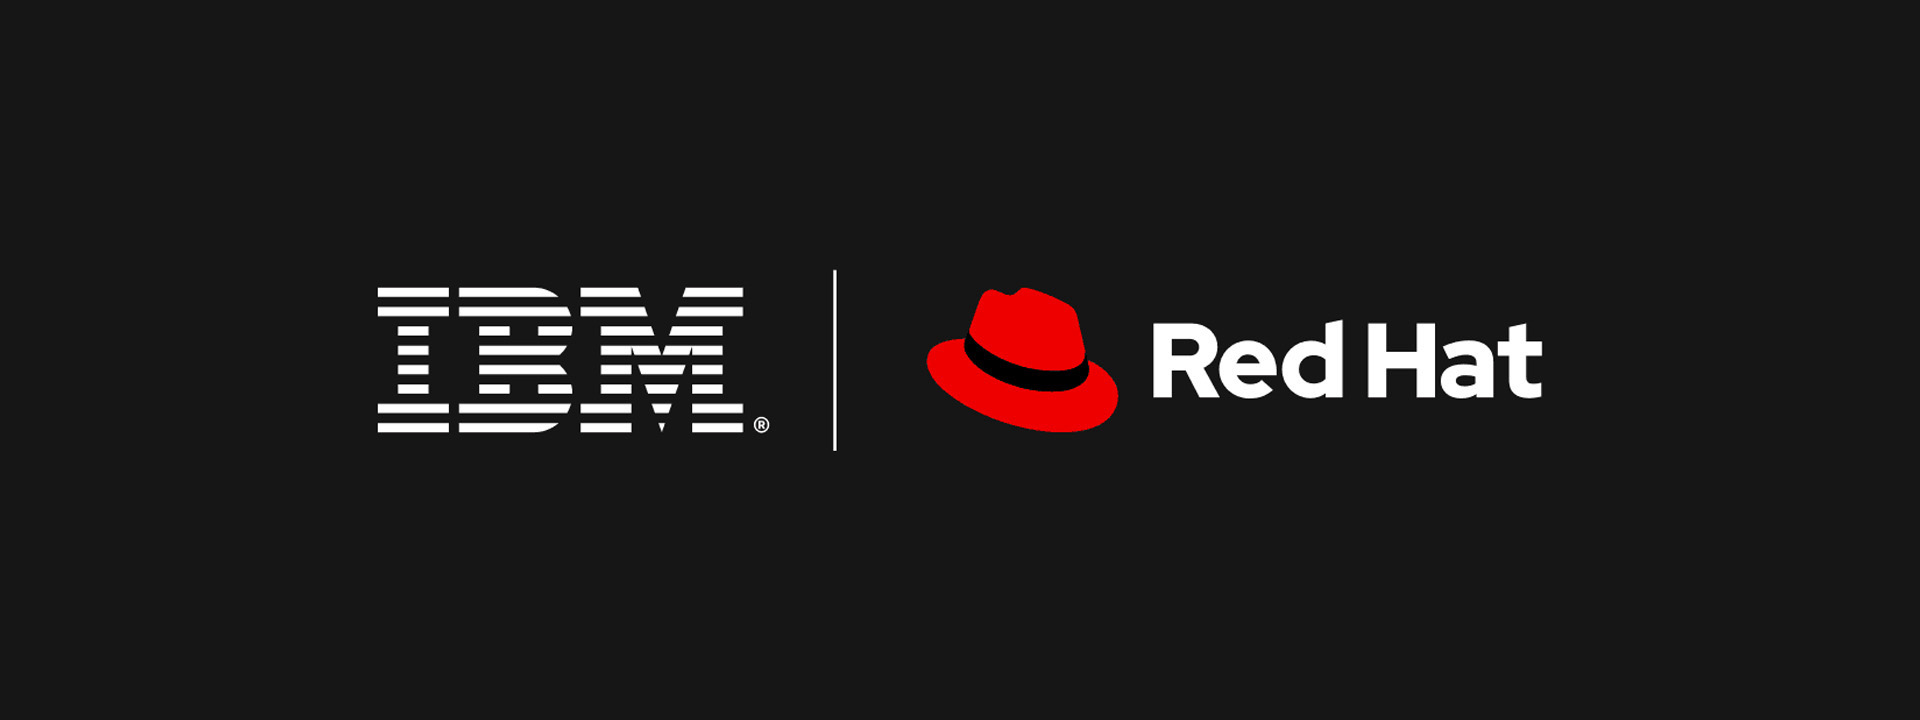 IBM Red Hat